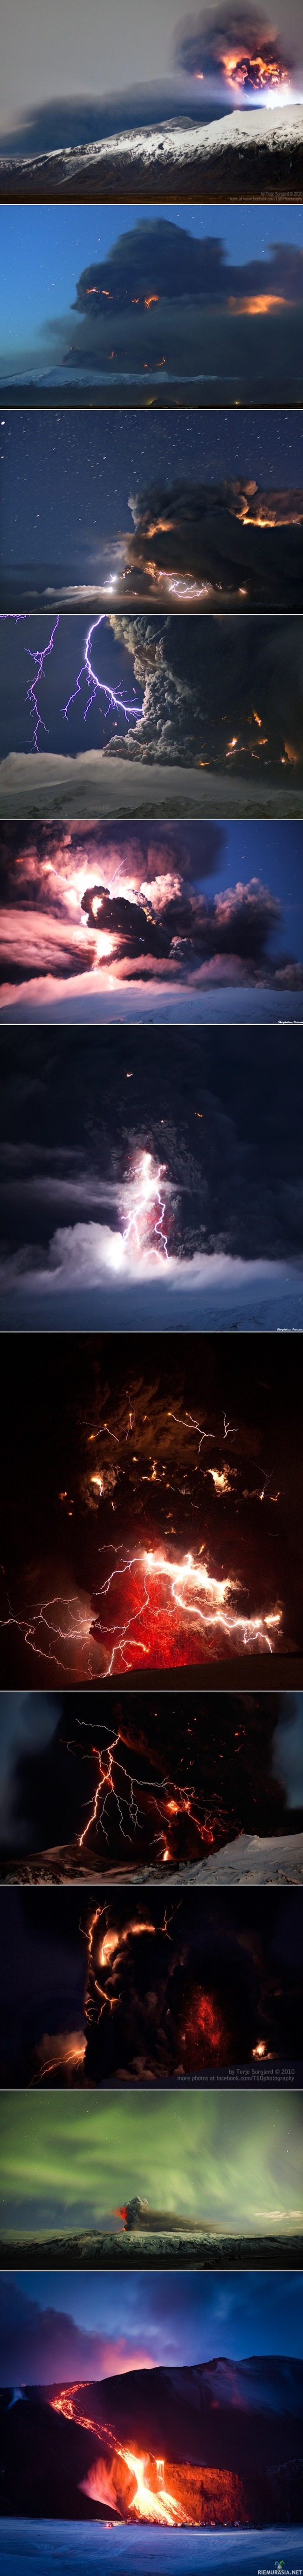 Salamoita, sulaa kiveä, tuhkaa ja revontulia jäätiköllä - Eyjafjallajökull on jäätikkö Islannin eteläosassa. Sen alla on jäätikön mukaan nimetty Eyjafjallajökull-niminen tulivuori, joka on purkautunut vuosina 920, 1612 ja 1821–1823. Se alkoi purkautua uudelleen maaliskuussa 2010. 

Korkeus: 1 666 m. Pinta-ala: 100 km². Viimeisin purkaus: huhtikuu 2010. Prominenssi: 1 051 m. Ensimmäinen nousu huipulle: Sveinn Pálsson.

Purkaus vuonna 2010: alue oli ollut seismisesti yhtäjaksoisesti aktiivinen tammikuusta 2010 lähtien. Samalla odotettiin myös viereisen Katlan purkautuvan. Tulivuorilla on taipumus aktivoitua samoihin aikoihin. Huhtikuussa 2010 alkoi purkauksen voimakkaampi vaihe, jossa tulivuori syöksi tuhkaa noin 8,5 kilometrin korkeuteen useiden päivien ajan. Ilmakehään levinneen tuhkapilven vuoksi Suomen ja useimpien muiden Euroopan maiden ilmatila suljettiin kokonaan tai osittain. Useita satoja Eyjafjallajökullin lähialueiden asukkaita evakuoitiin jäätikön sulamisen aiheuttaman jökulhlaupin alta. 

Tuhkapilvi aiheutti uhkan lentoturvallisuudelle, sillä tuhka saattaa pysäyttää tai jopa tuhota lentokoneiden moottorit. Lisäksi se haittaa näkyvyyttä ja voi olla terveysriski hengitysilmaan joutuessaan. Tämän vuoksi ilmatila ja lentokentät suljettiin kokonaan tai osittain useaksi päiväksi lähes kaikissa Euroopan maissa. 